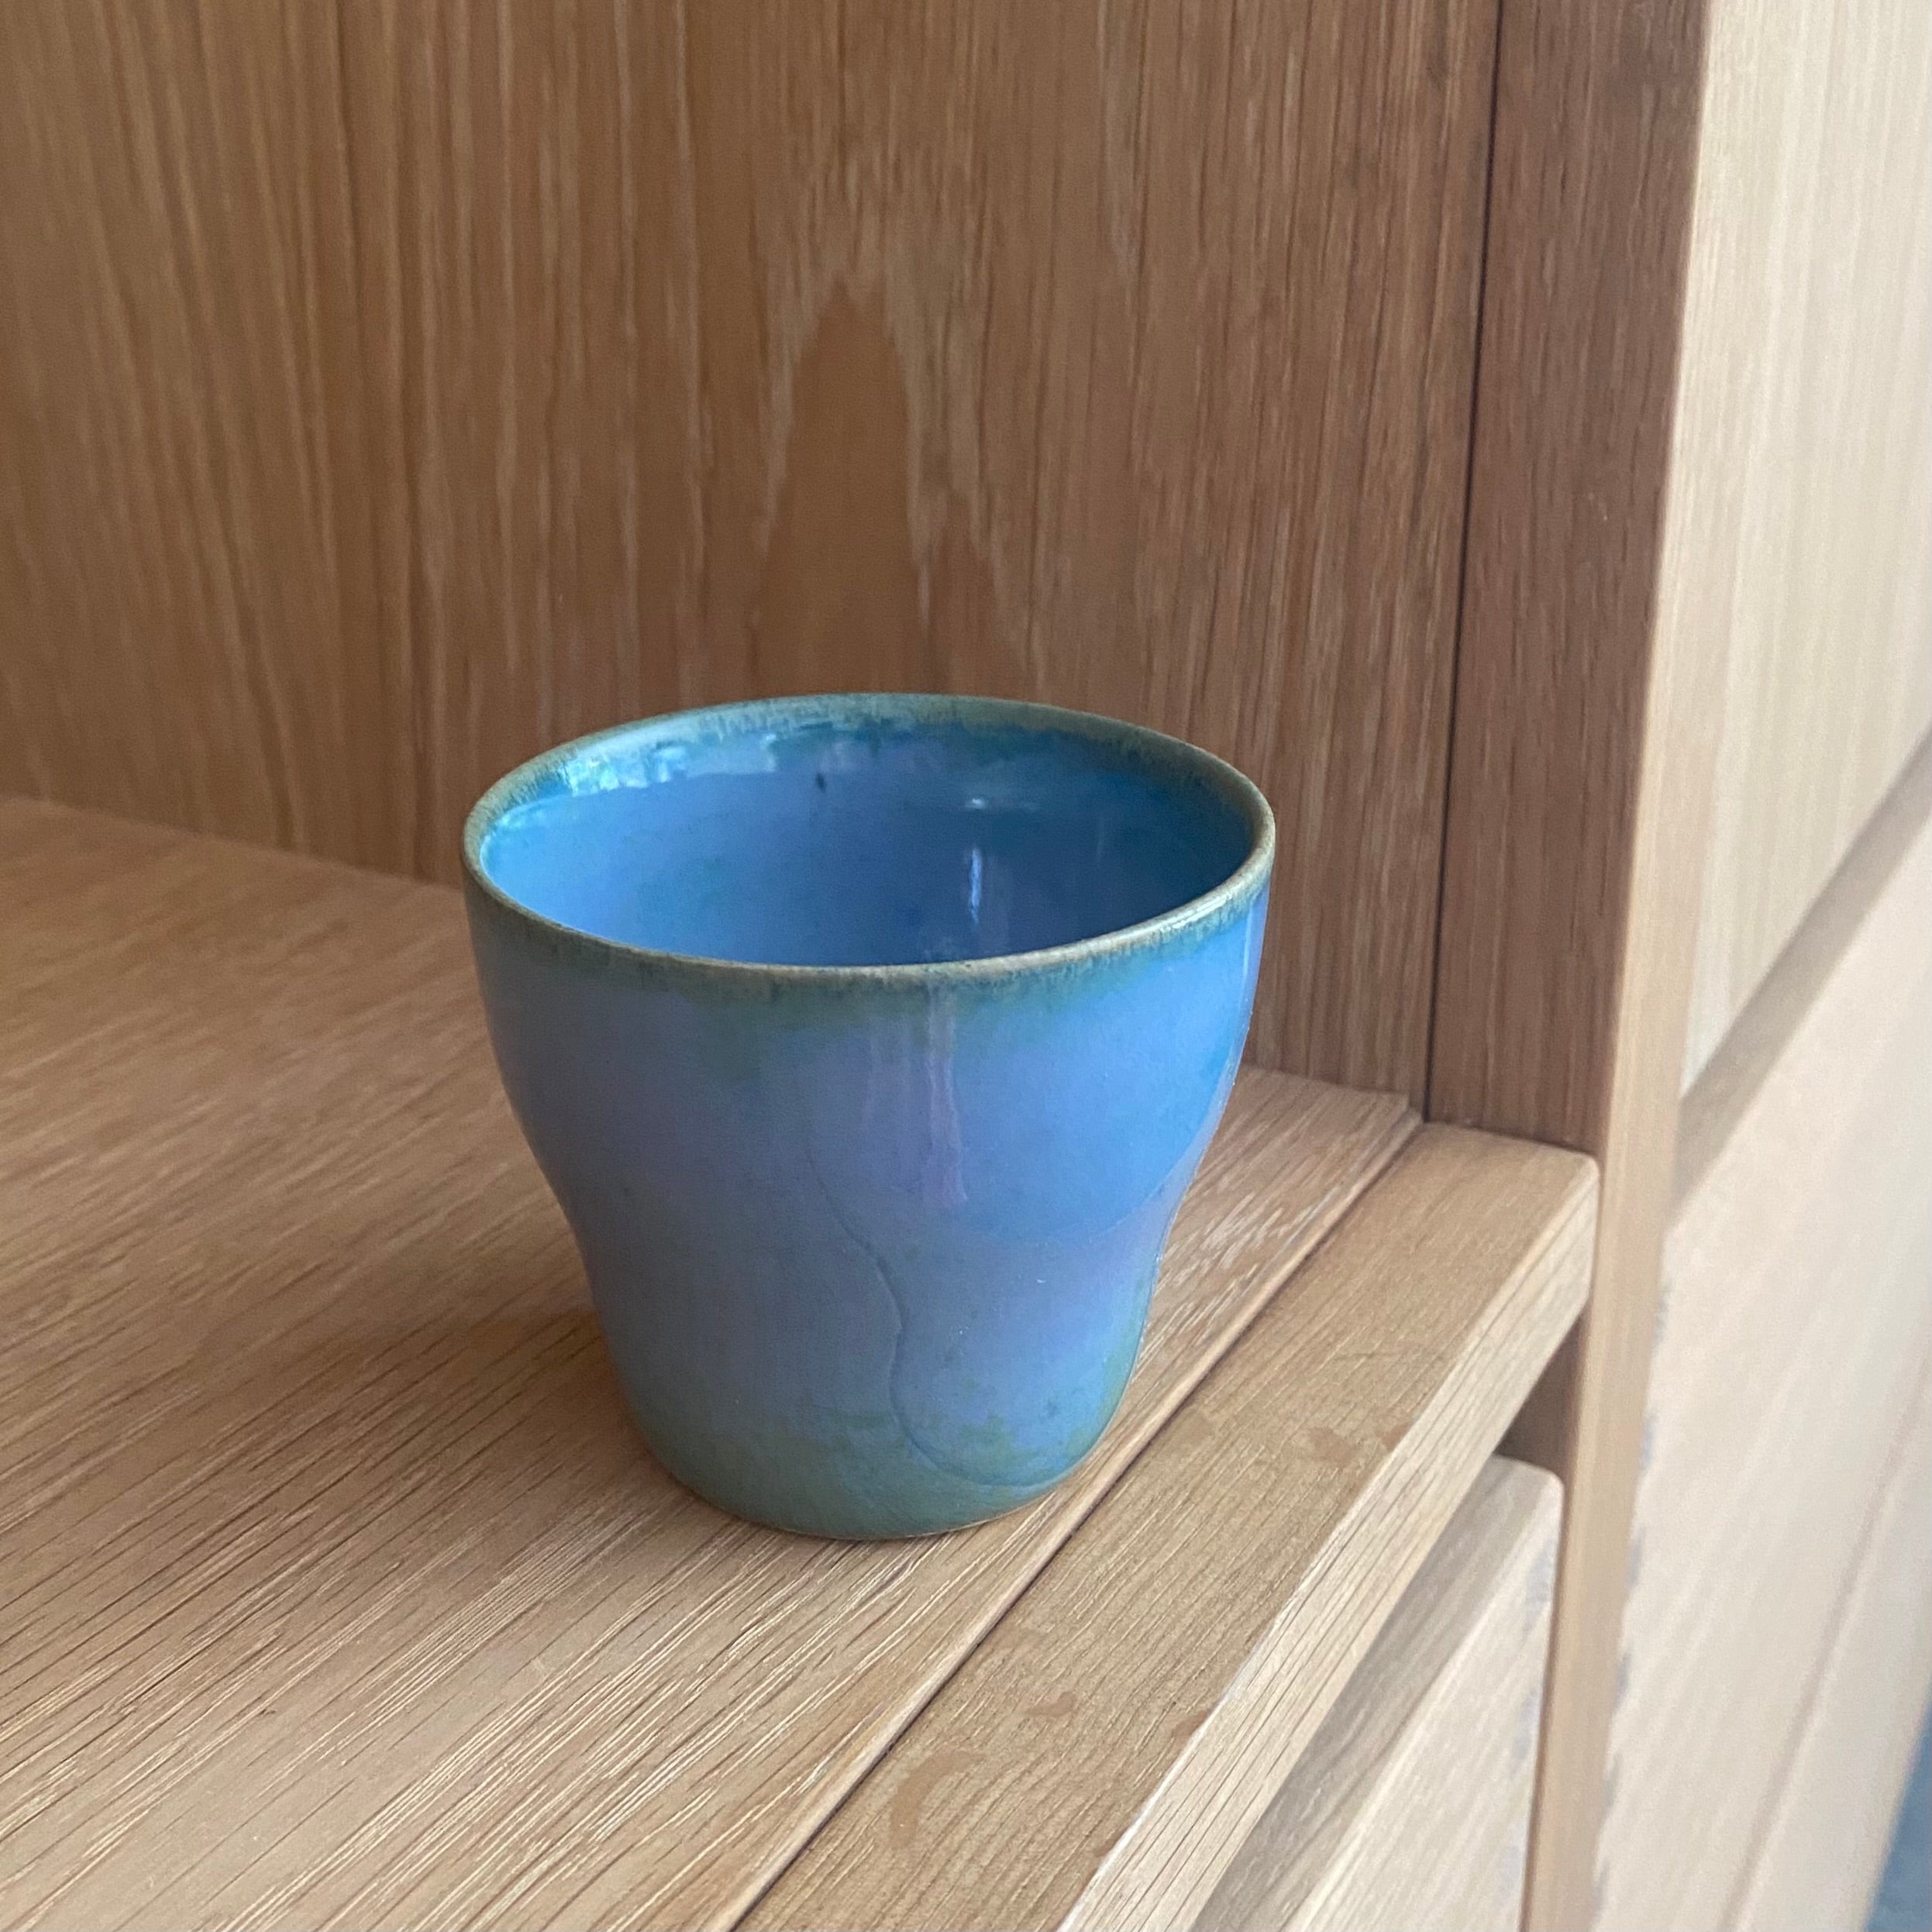 Haandlavet espressokop i blå unik glasur. dansk design af oh oak keramik